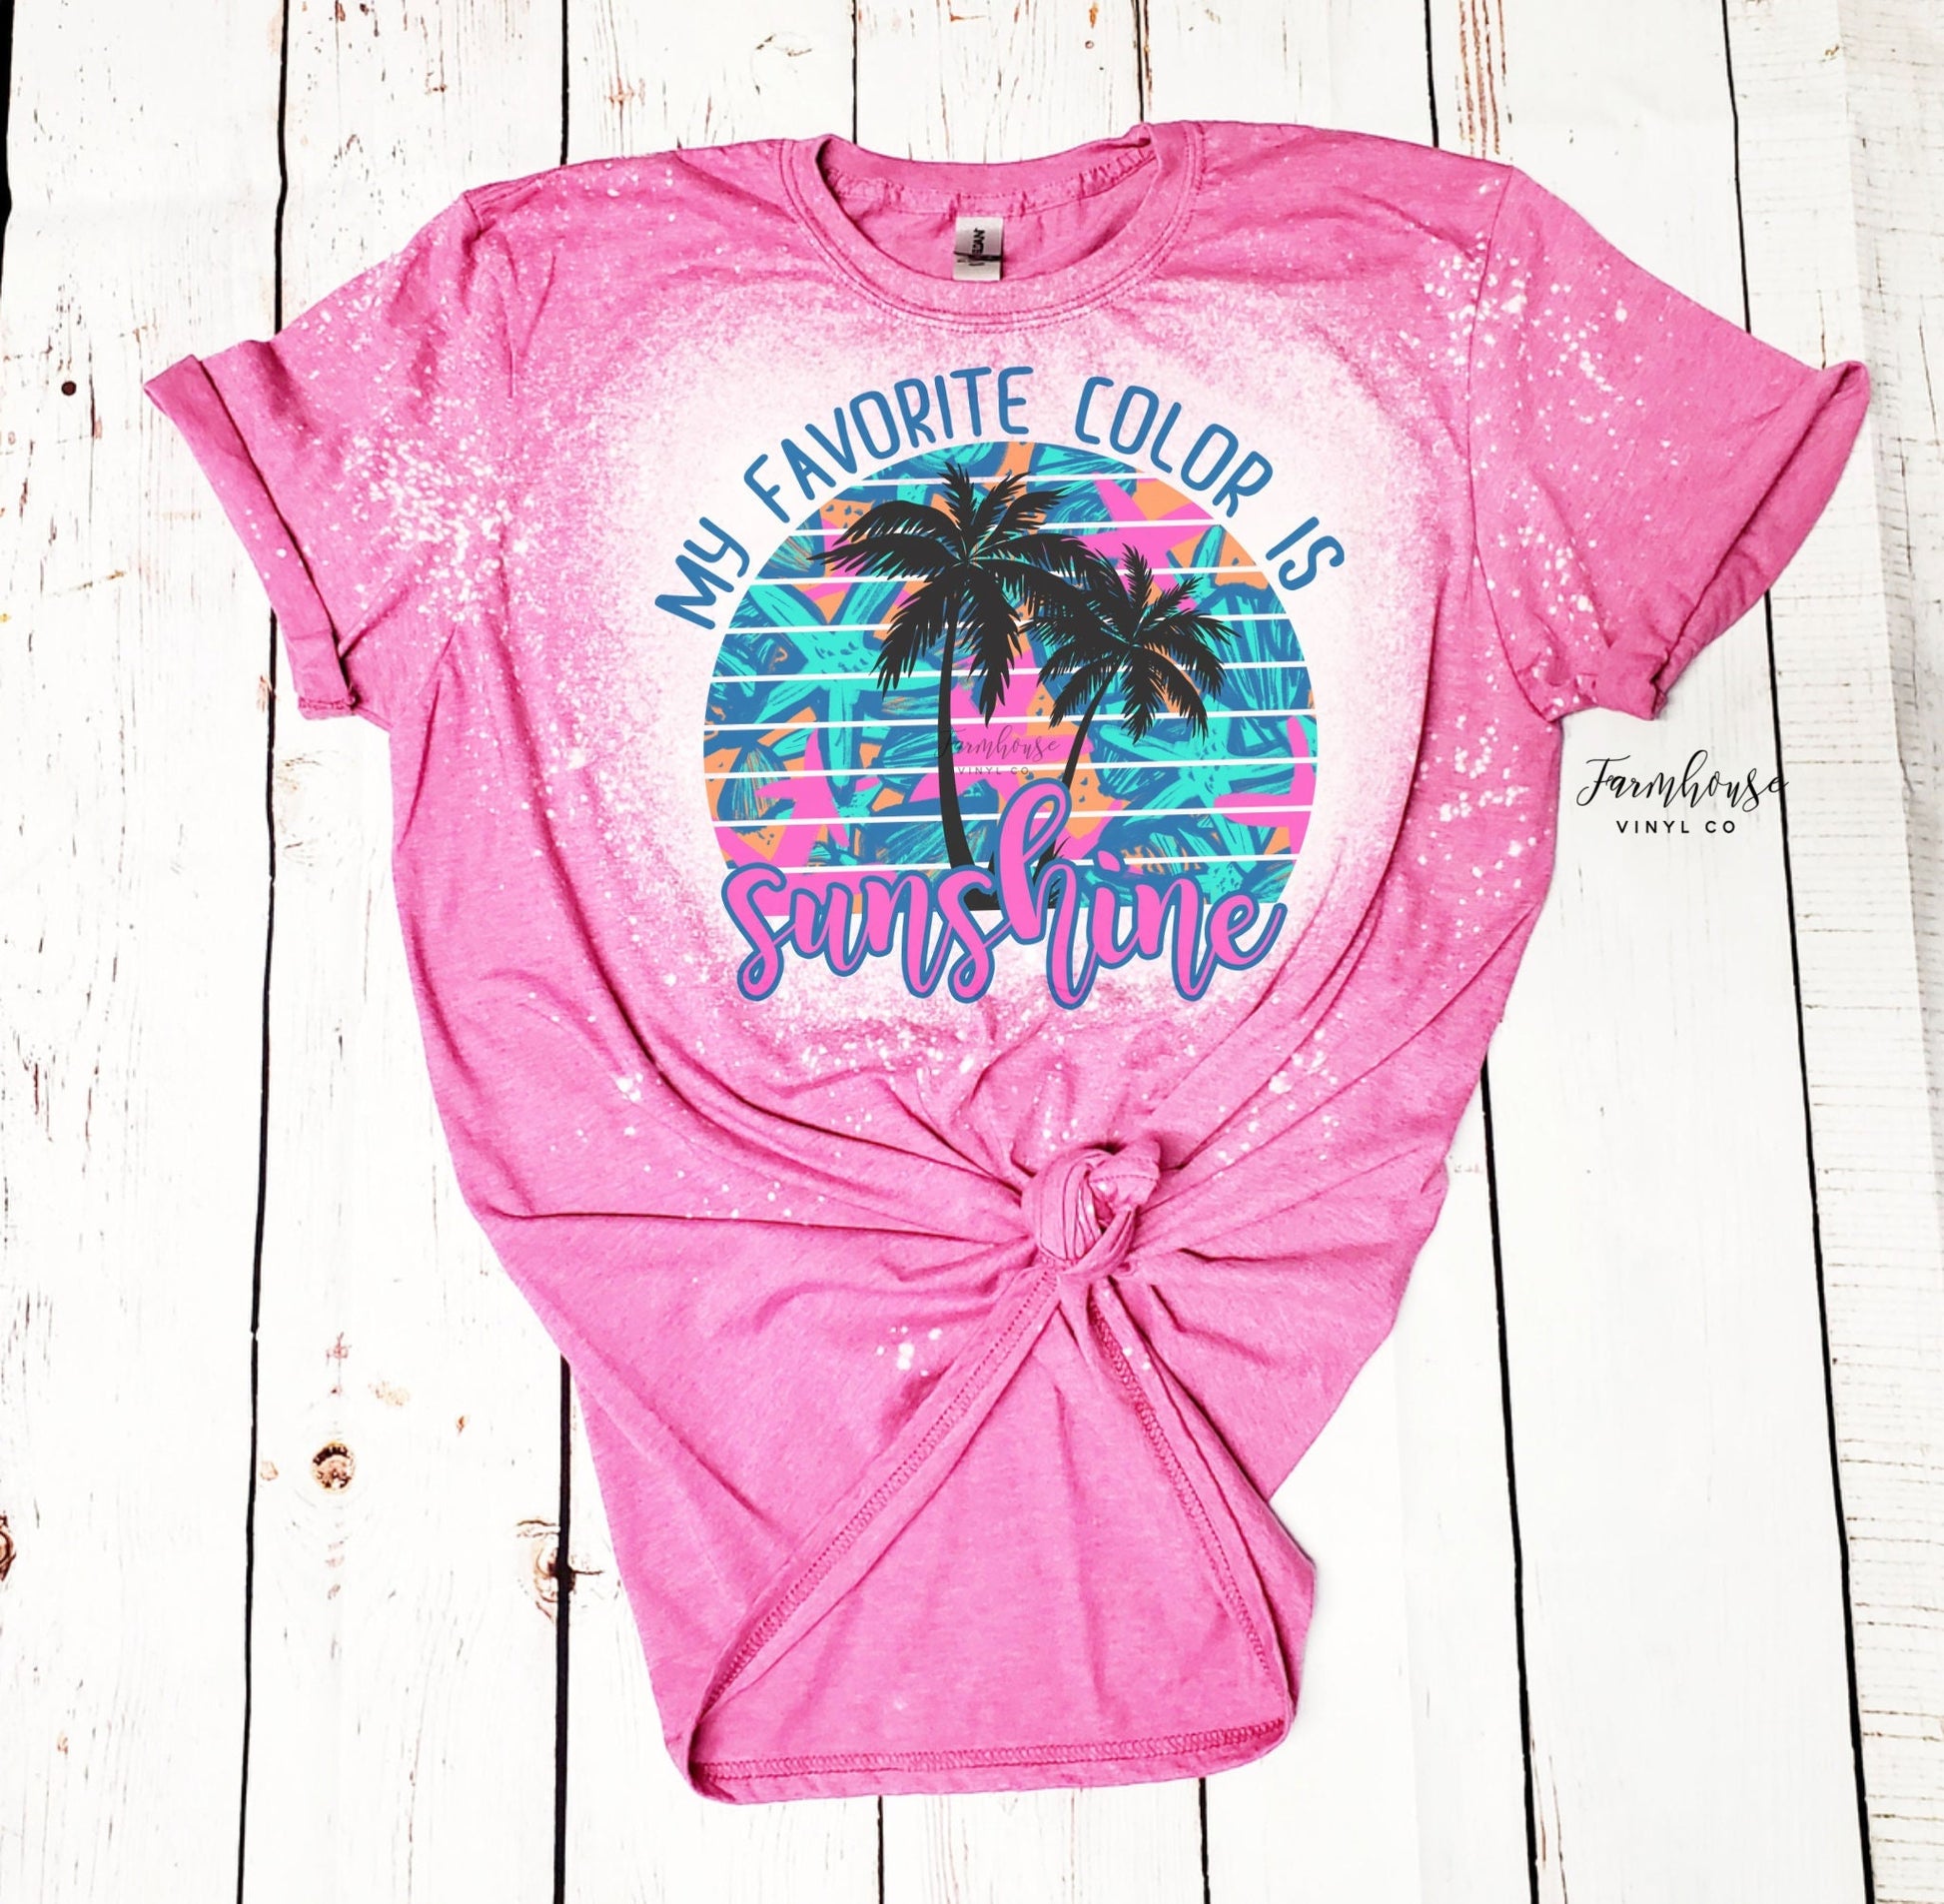 My Favorite Color is Sunshine Summer Shirt / Ocean Beach Trip / Summer Vacation Shirt / Neon Summer / Womens Summer TShirt / Beach Trip Tee - Farmhouse Vinyl Co